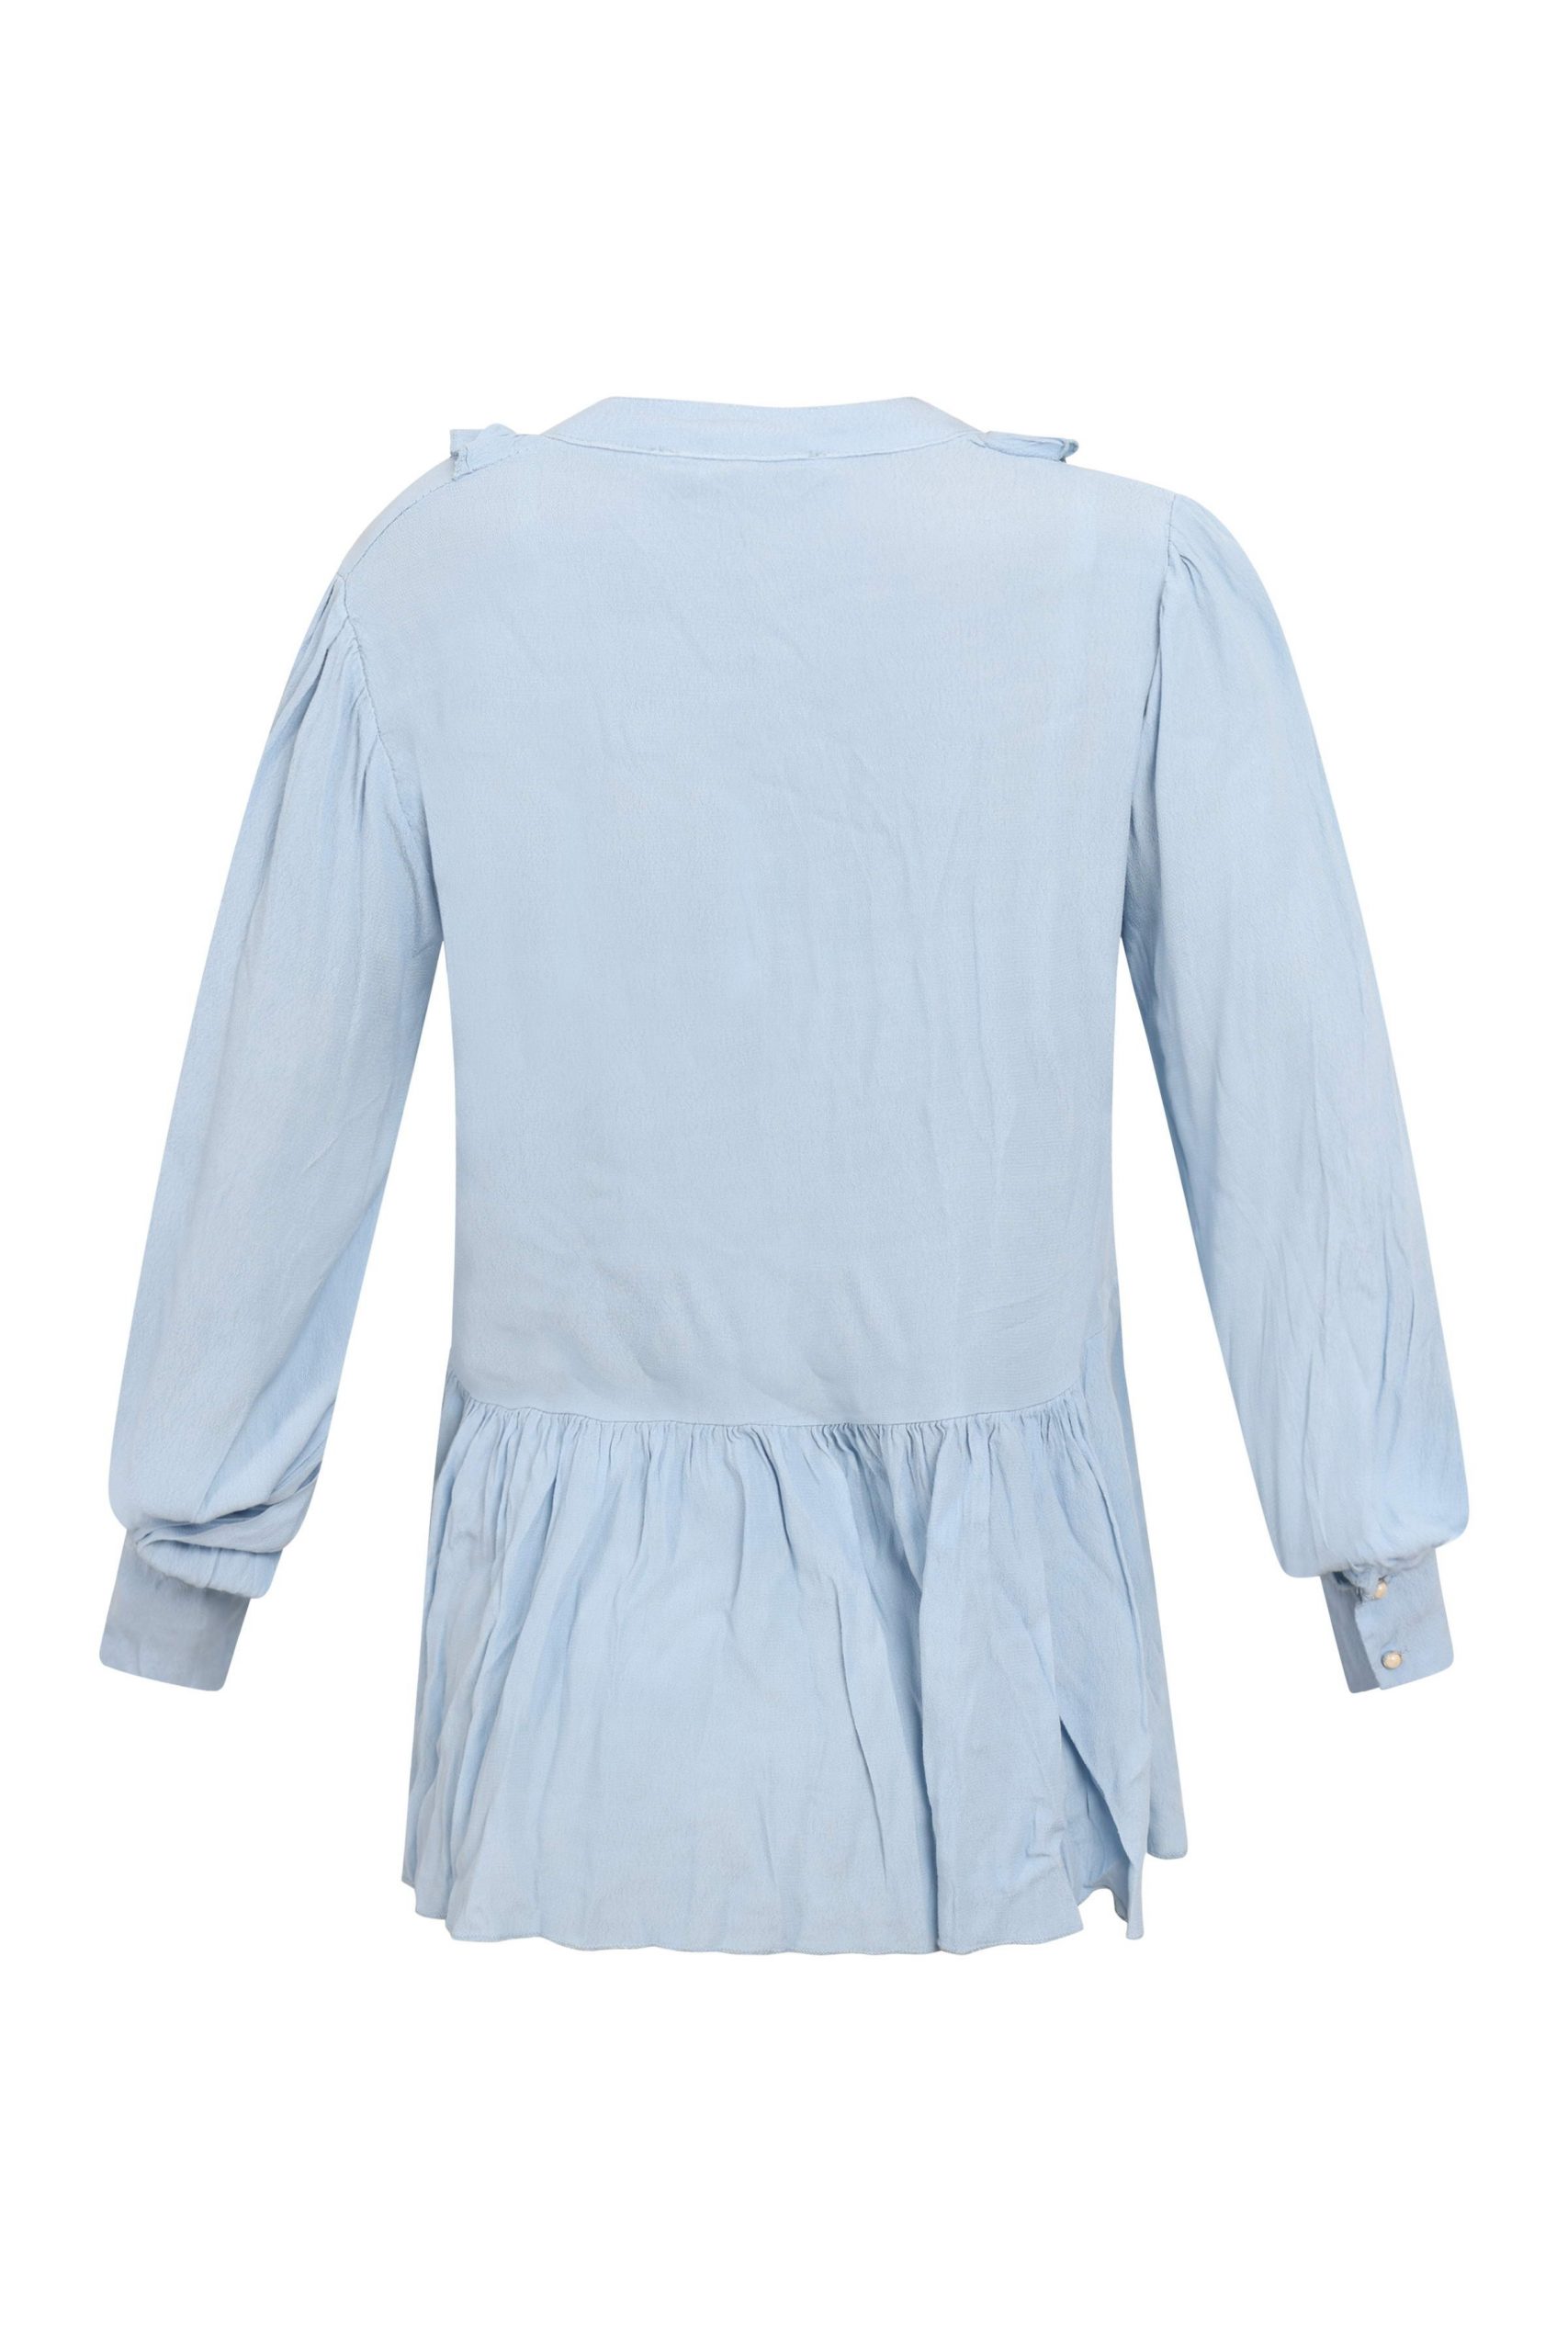 Flæseskjorte i lyseblå med fine detaljer style 1803